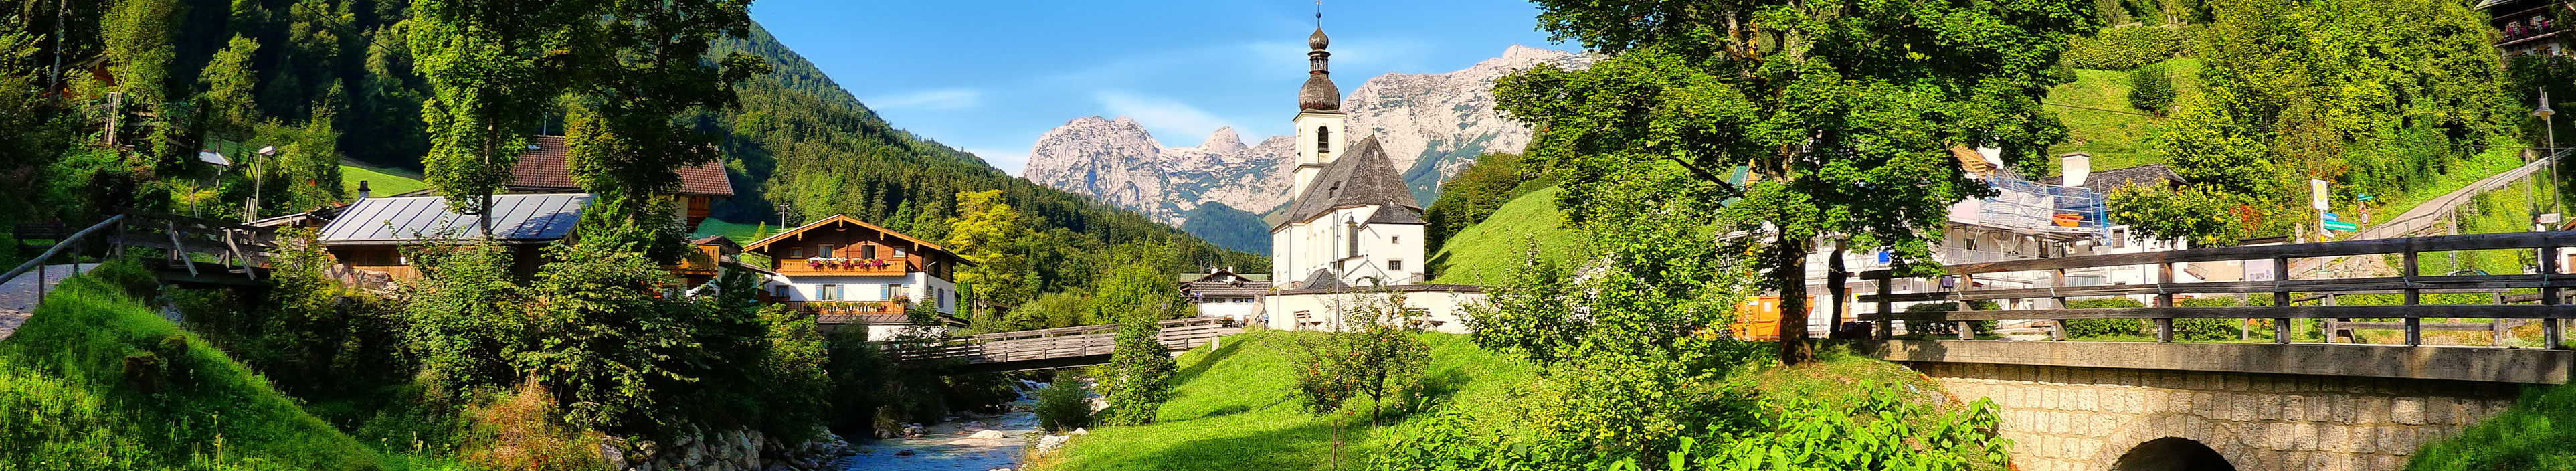 Blick auf eine Kirche, die Berge und die Landschaft in Ramsau während eines Urlaubs in Berchtesgaden